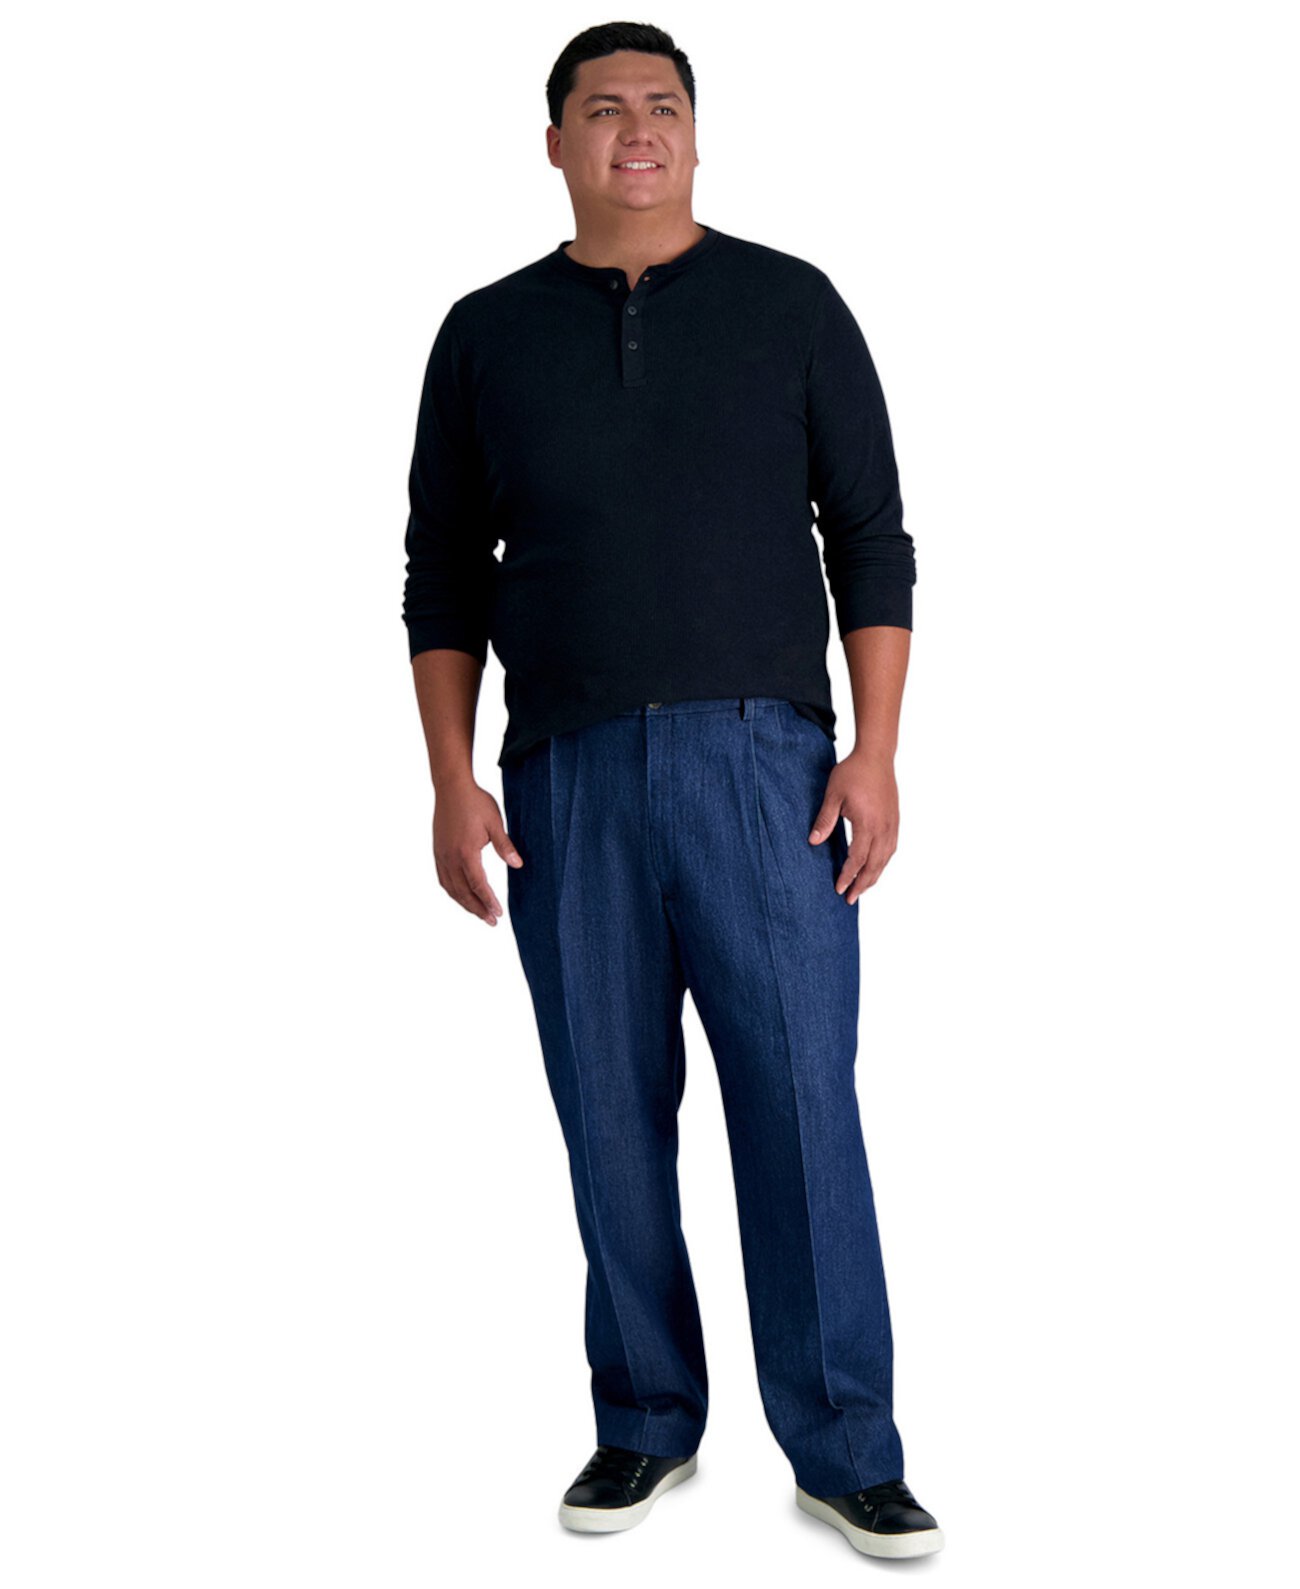 Мужские брюки классического кроя со складками из эластичного денима для больших и высоких размеров HAGGAR